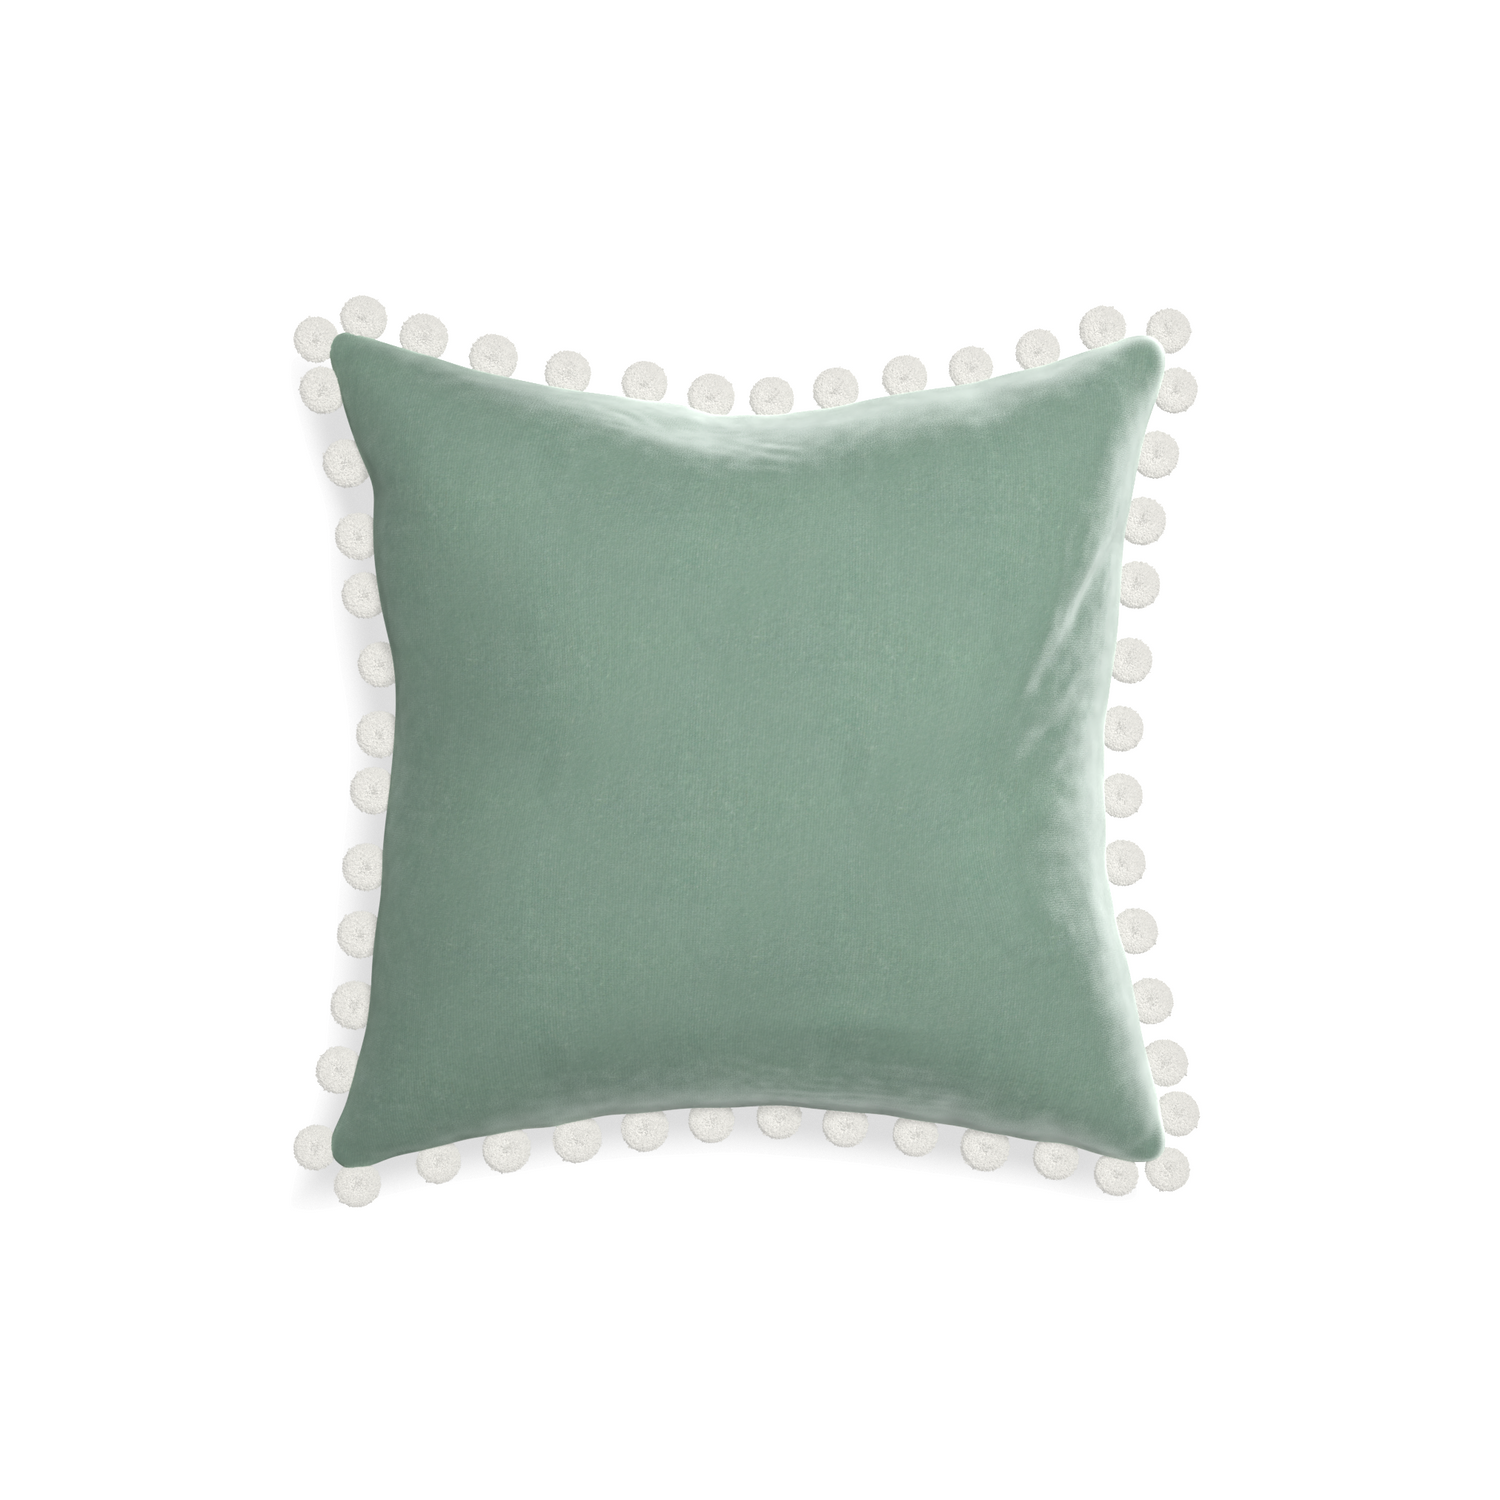 square blue green velvet pillow with white pom poms